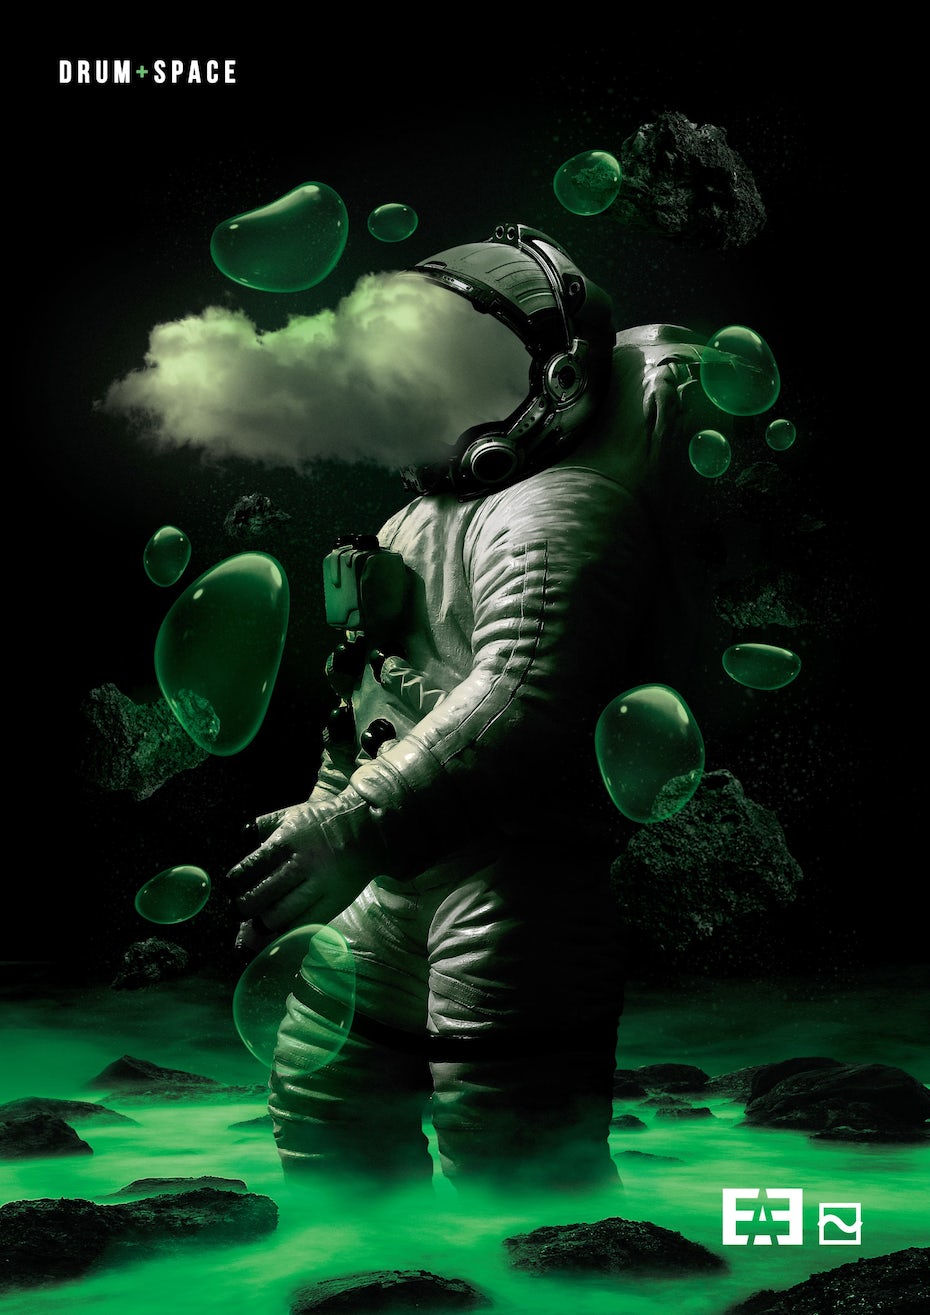 иллюстрация космонавта в черно-зеленом цвете